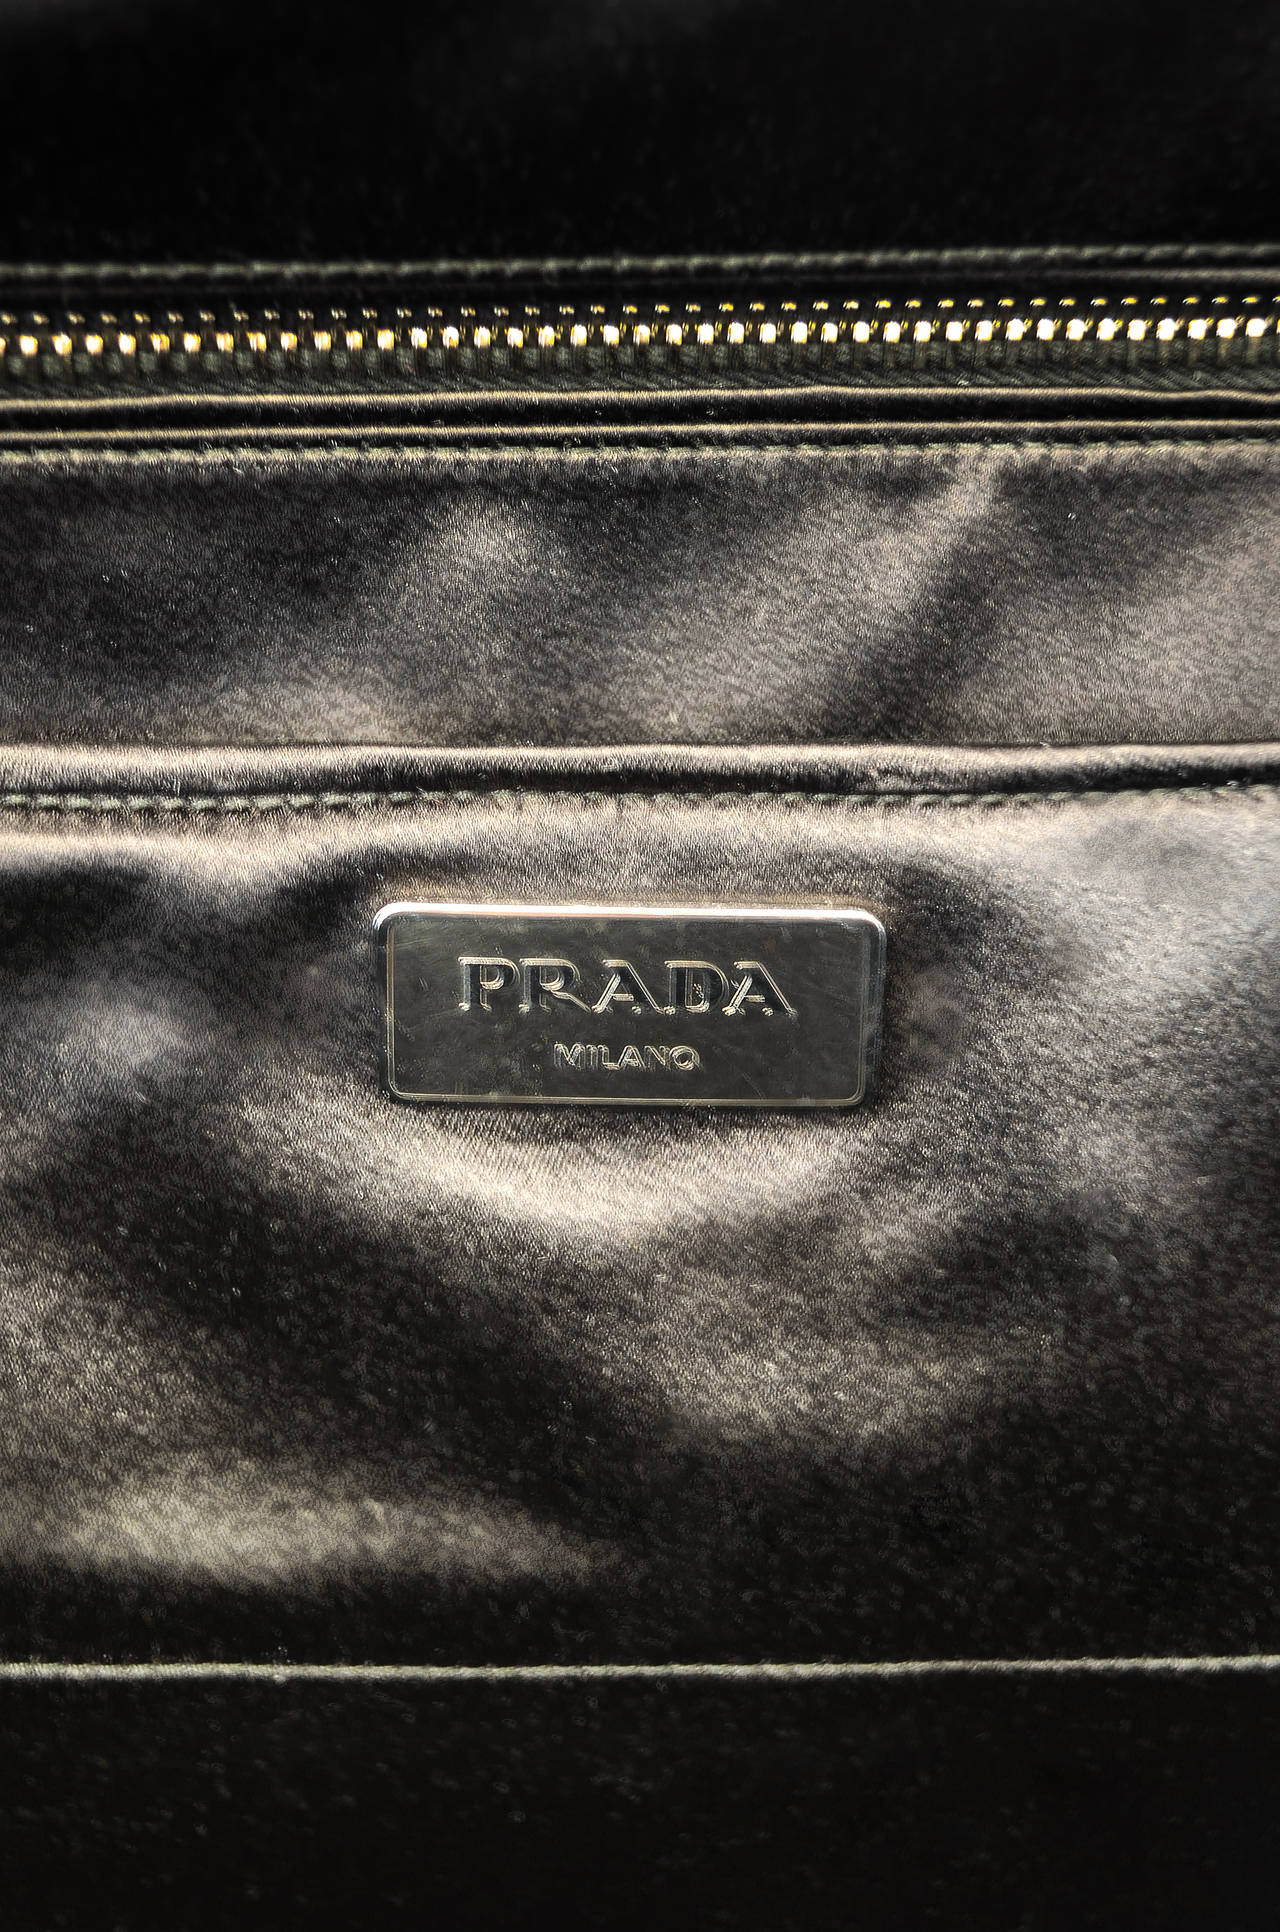 prada embellished bag